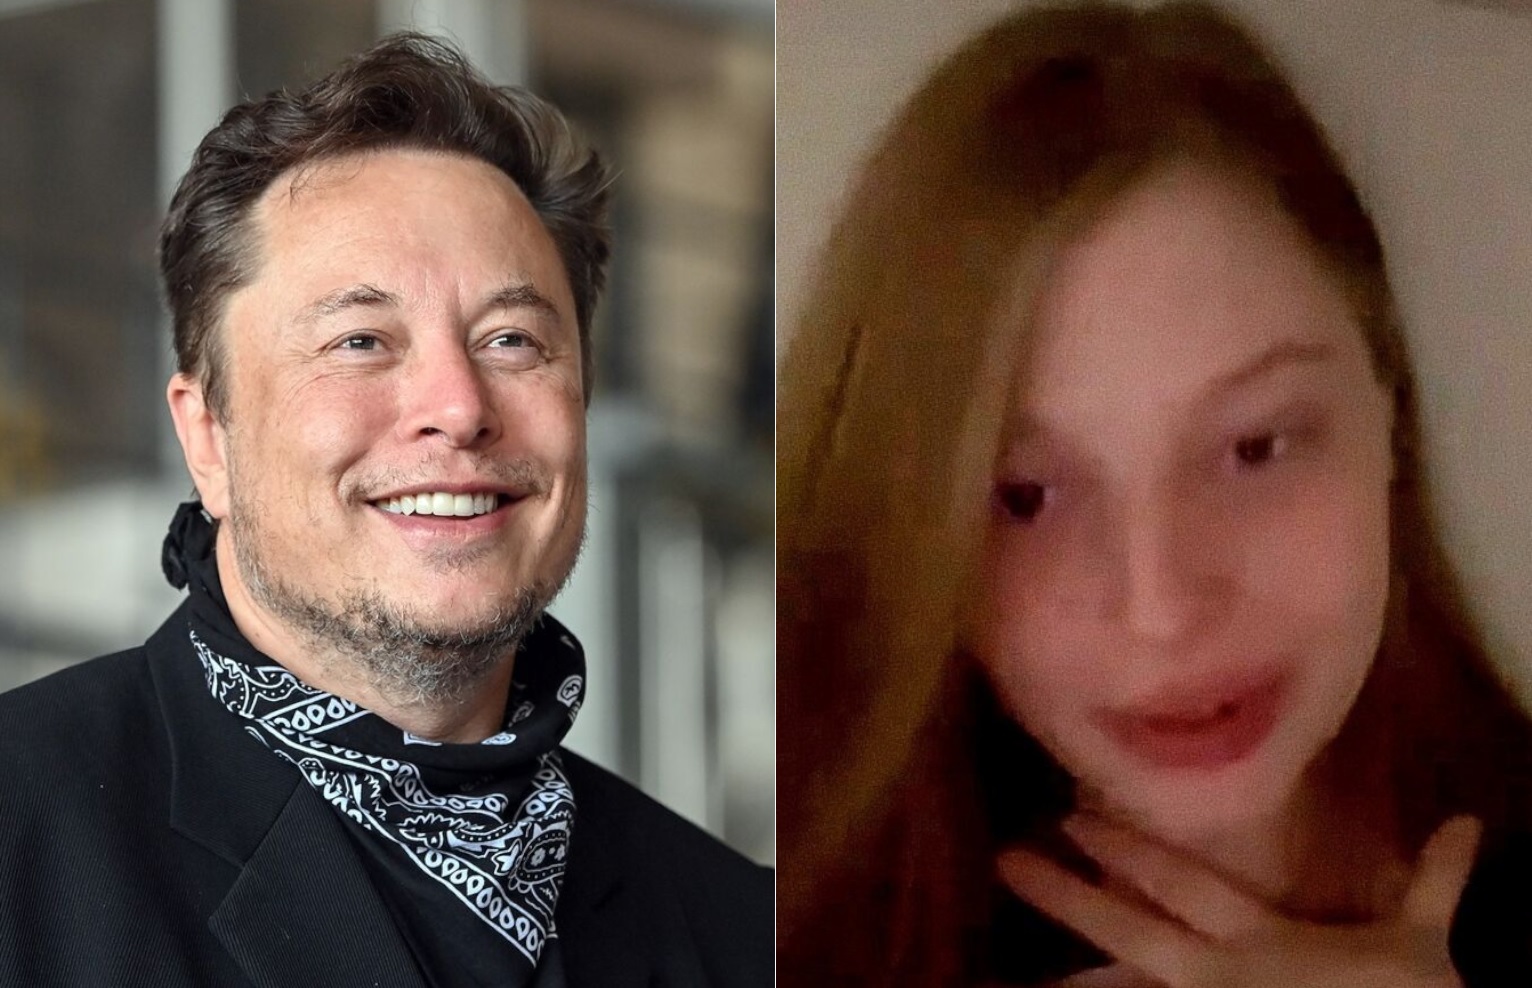 La hija trans de Elon Musk responde a las polémicas declaraciones de su padre